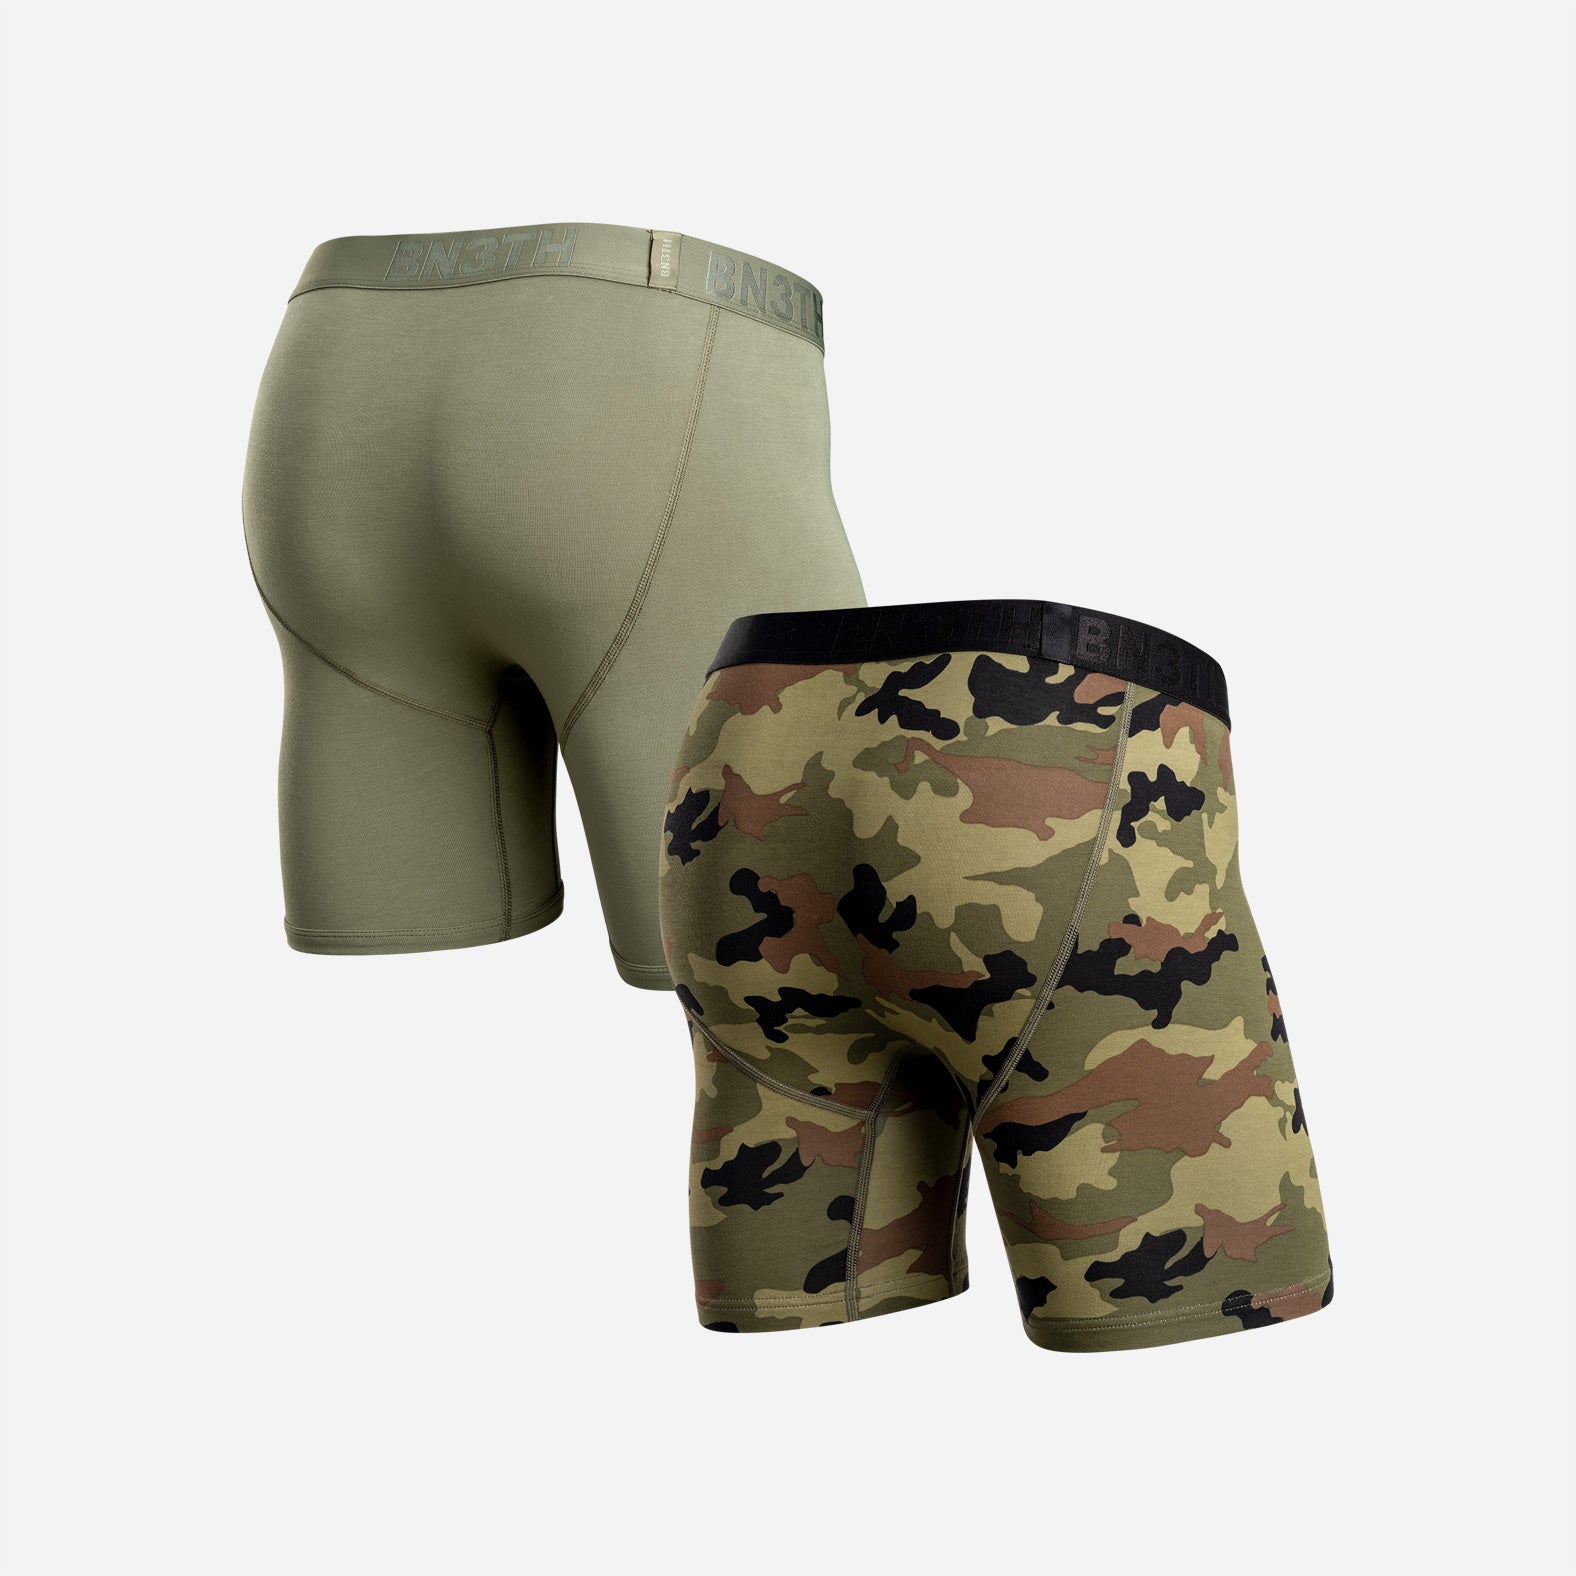  BN3TH Men's Pro 2.0 Premium Underwear with Pouch